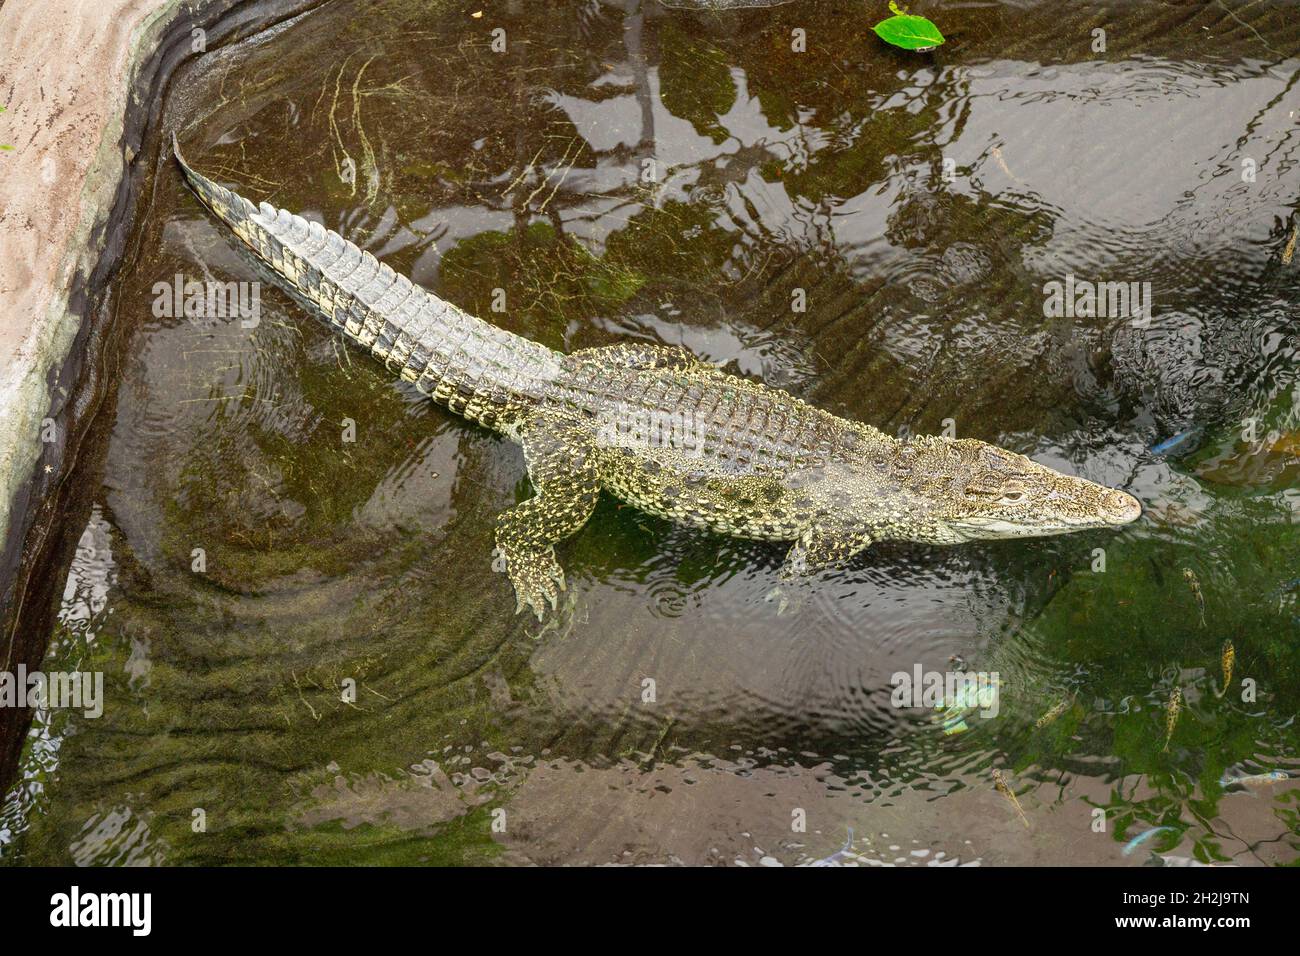 Kubanisches Krokodil Crocodylus rhombifer im Paignton Zoo, Devon, England, Vereinigtes Königreich. Stockfoto